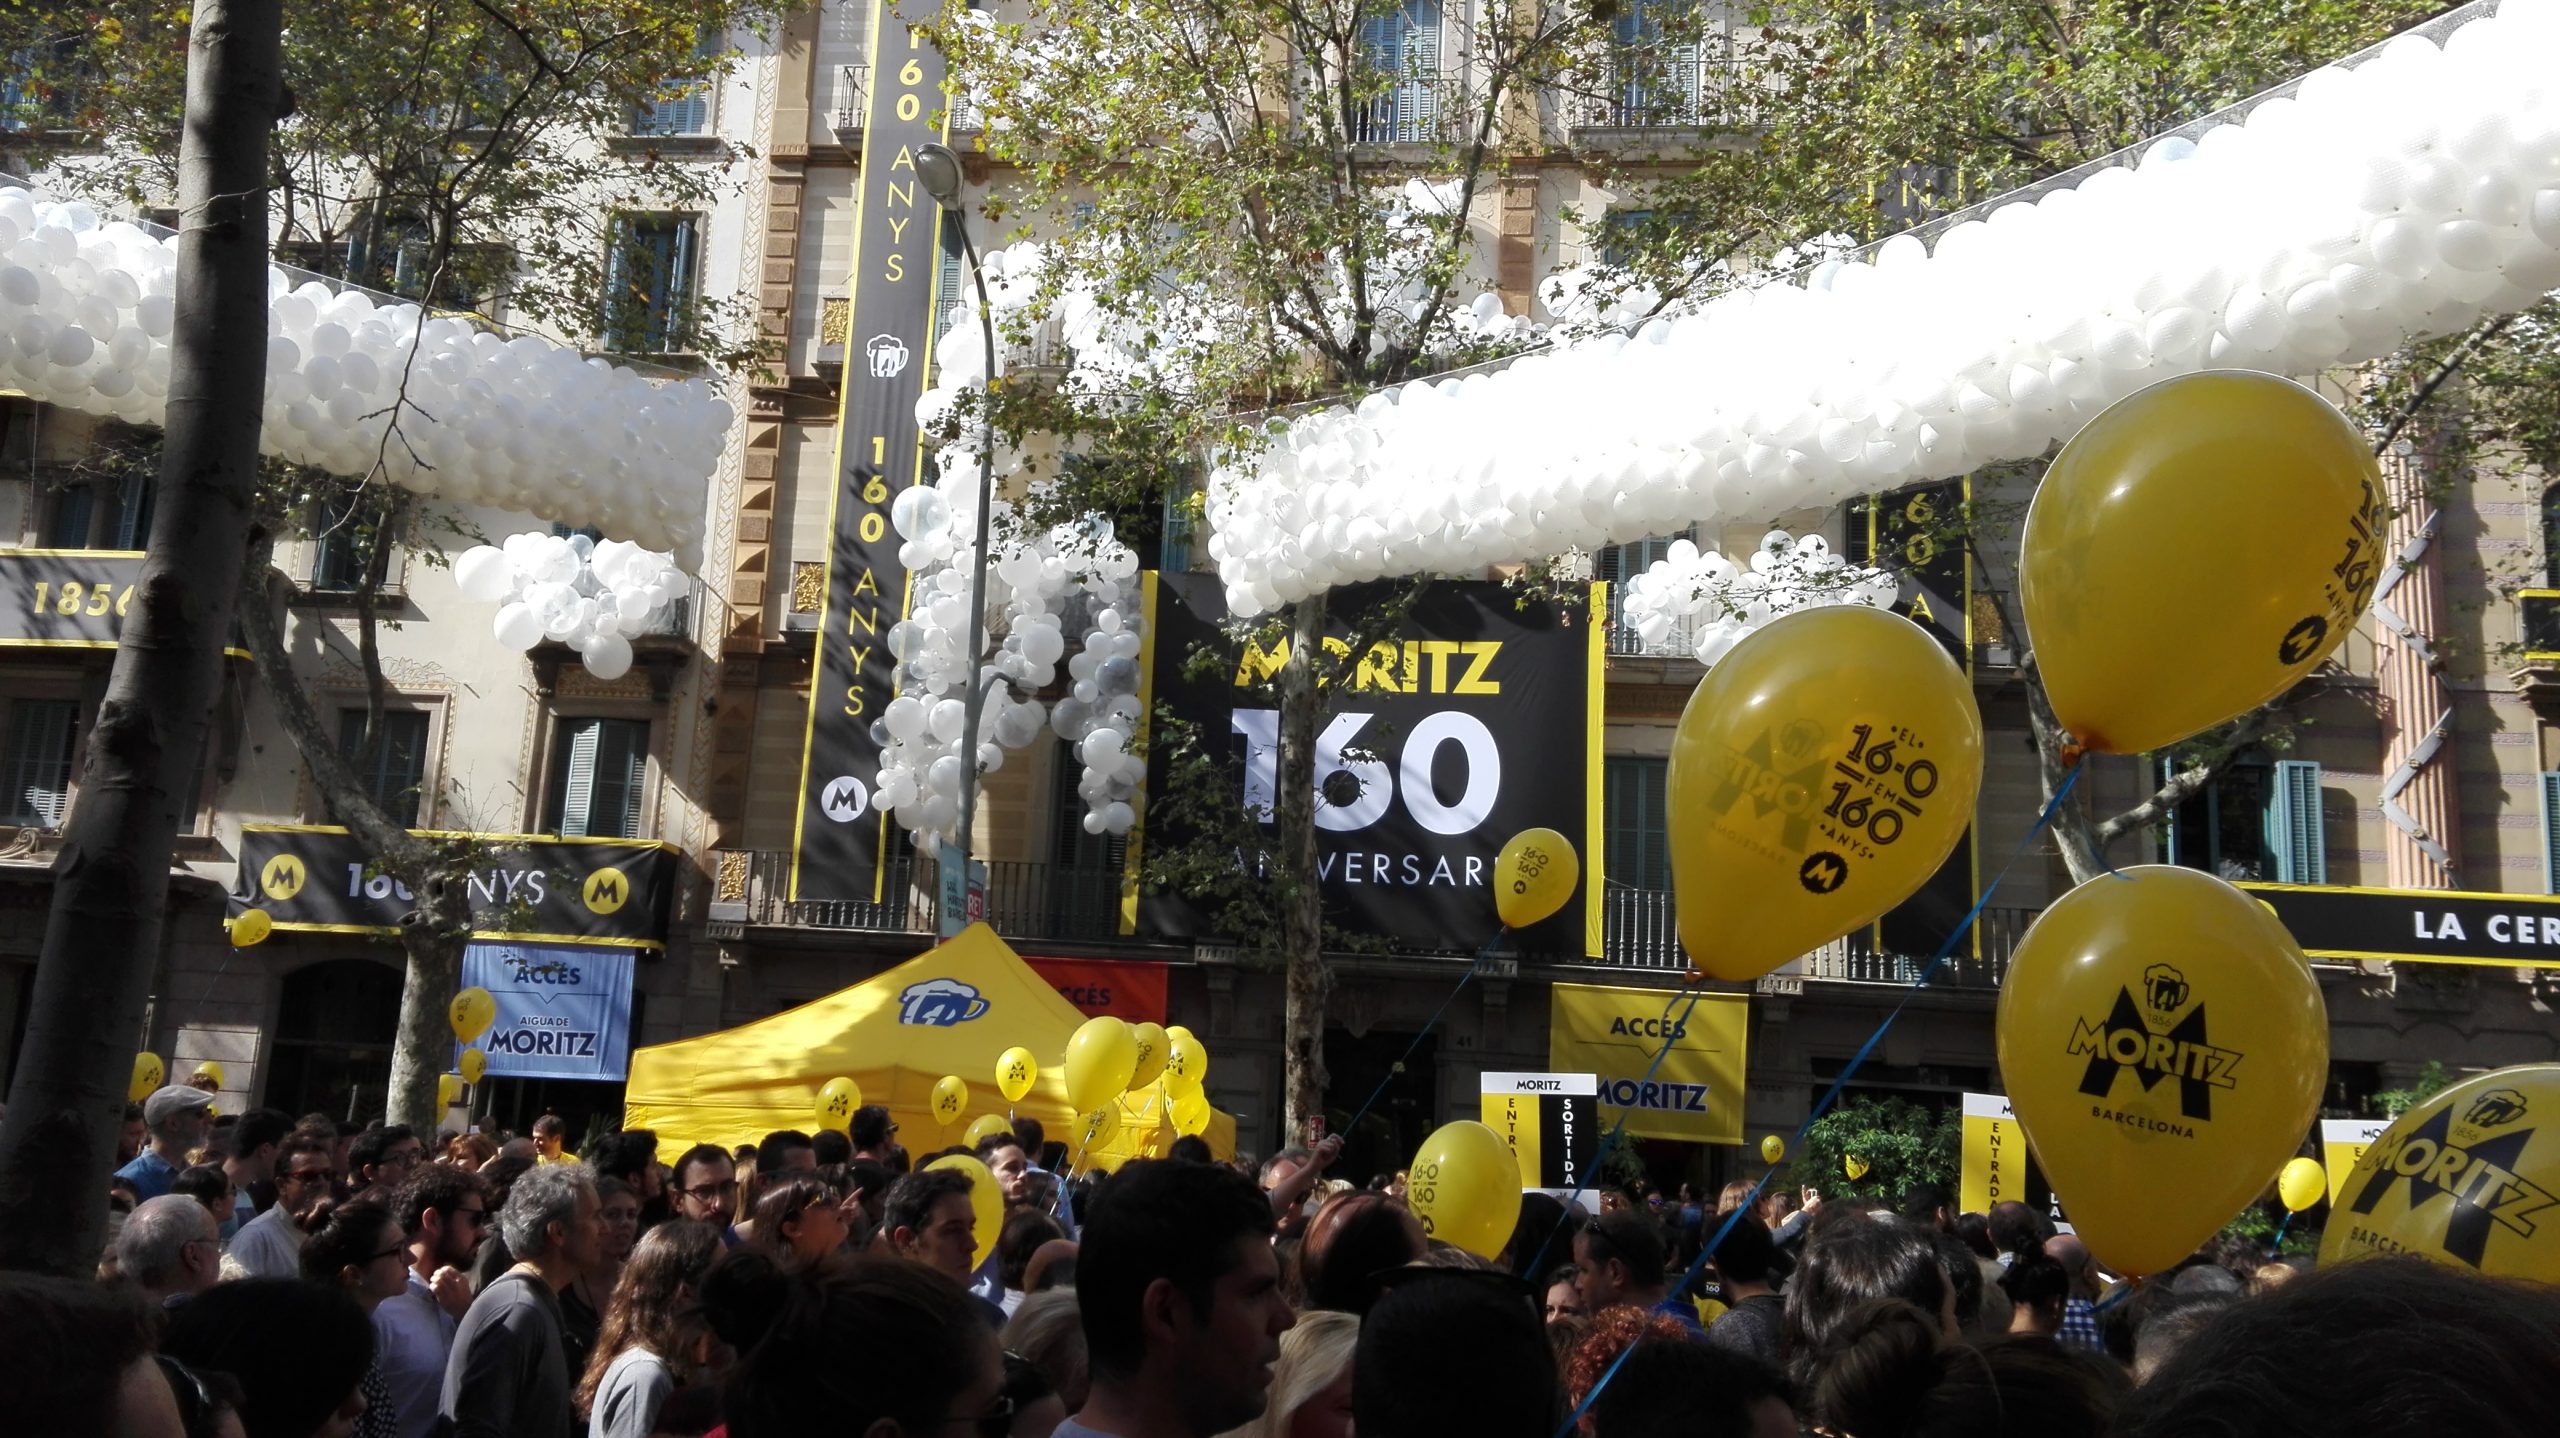 Cervezas Moritz celebra su 160 aniversario con la vuelta de la cerveza negra de la marca catalana